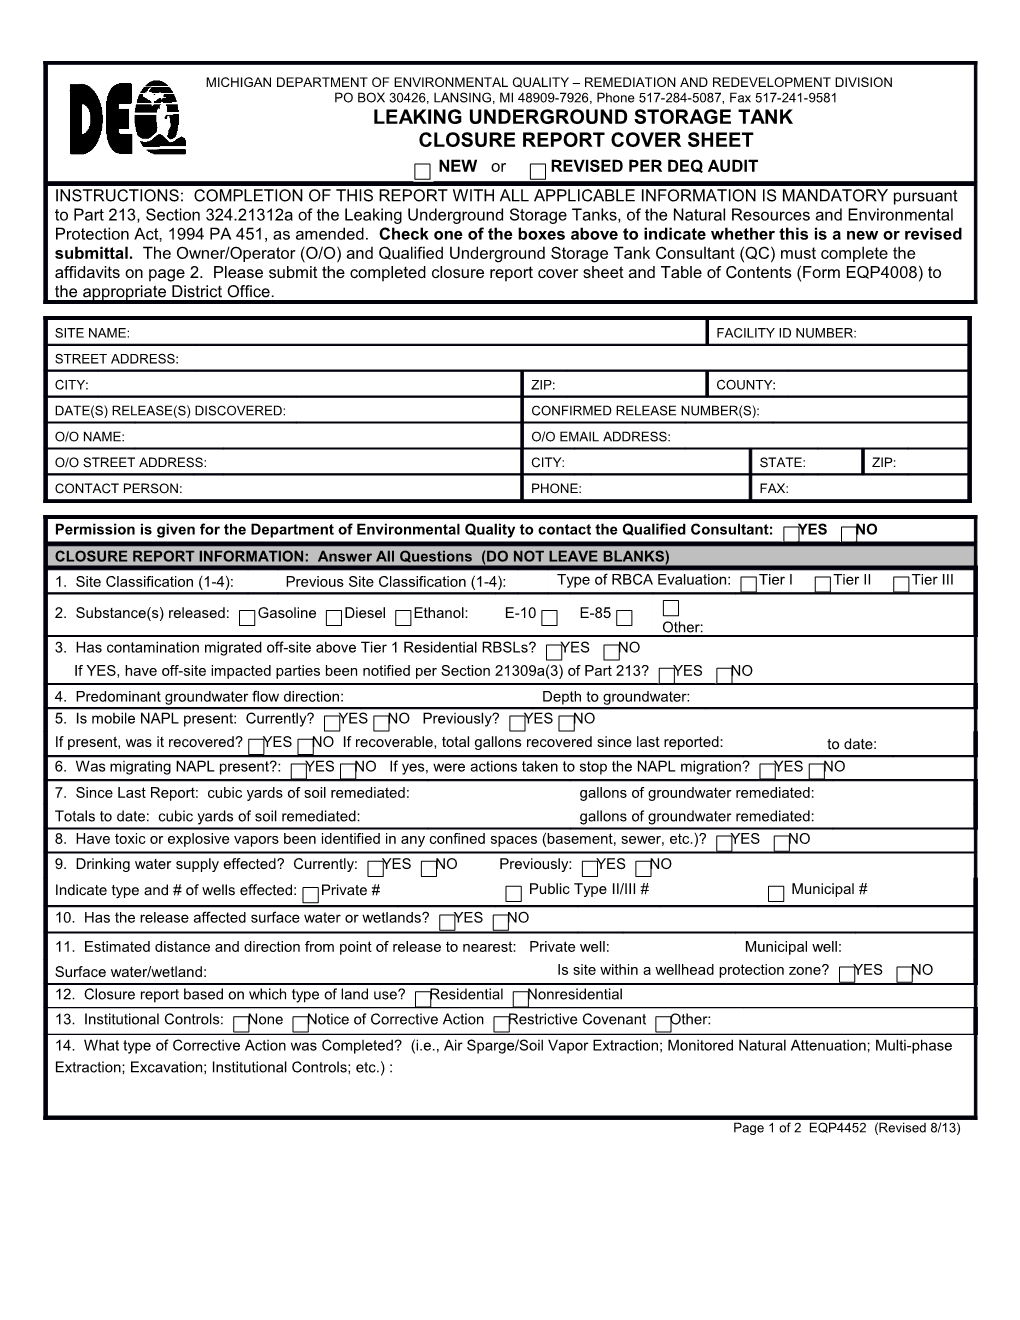 Closure Report Cover Sheet Form EQP4452